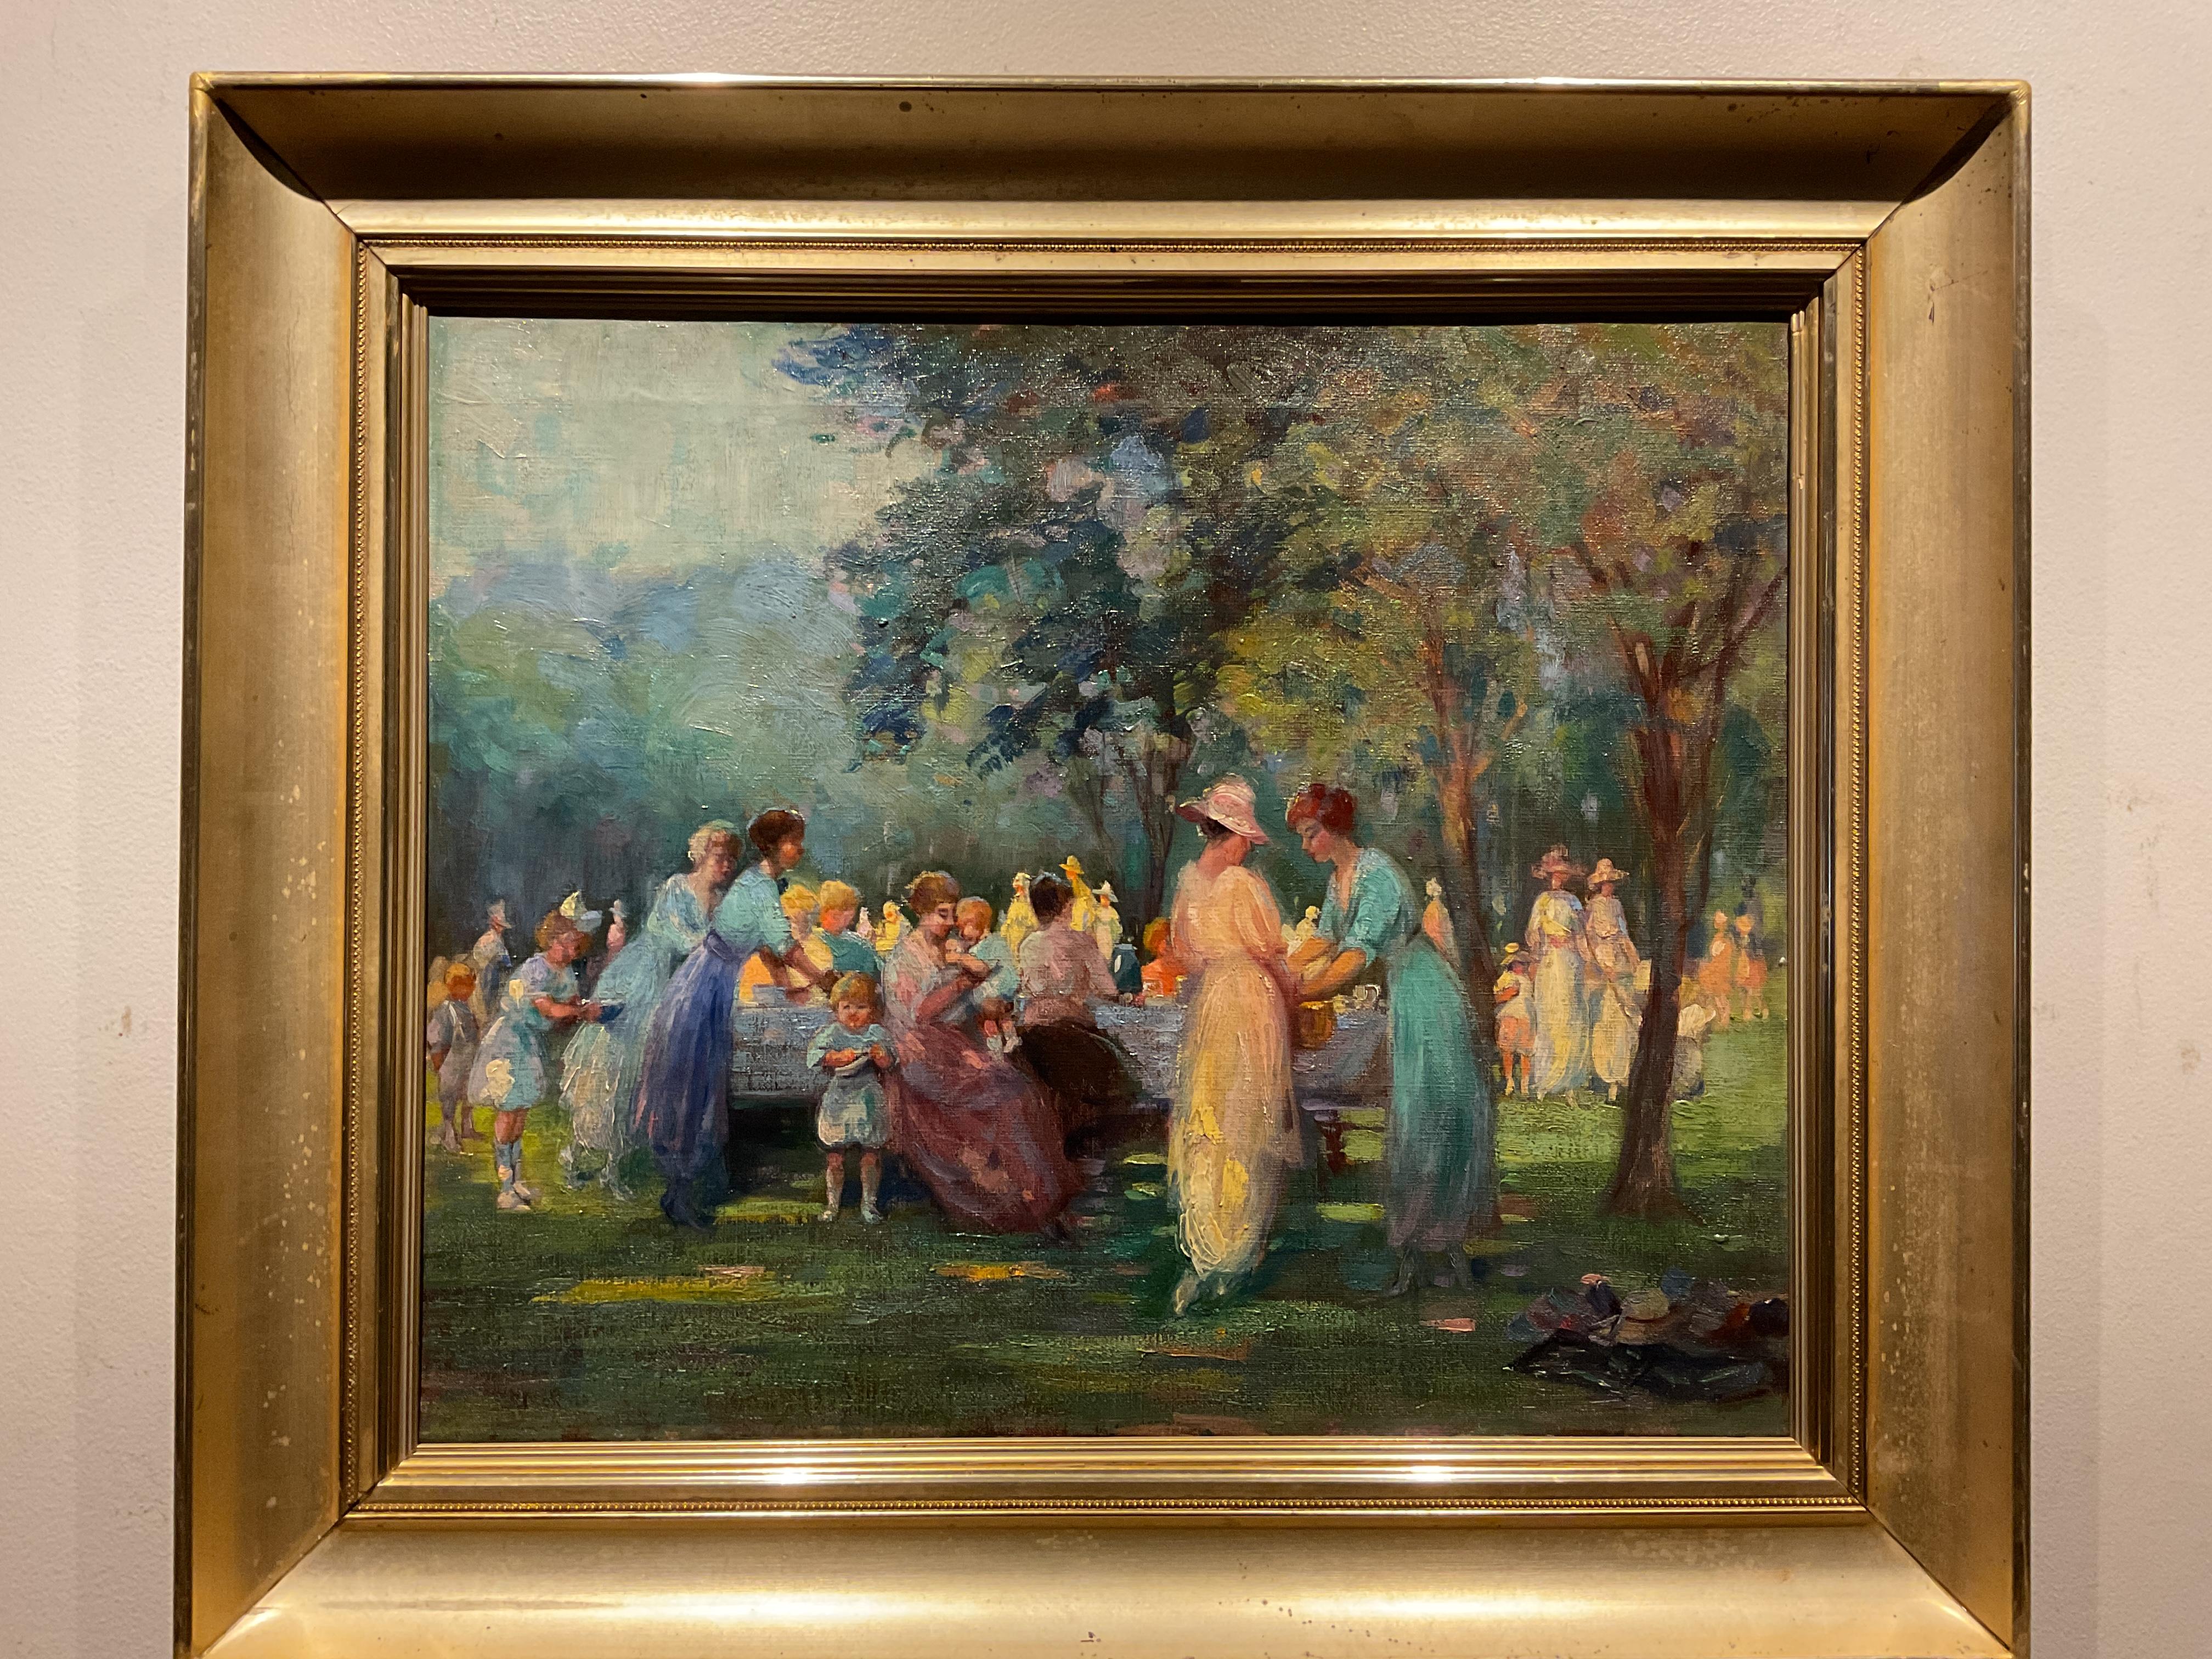 Figurative Painting Unknown - Huile sur toile de l'école impressionniste américaine, Picnic ou sortie familiale, 1925